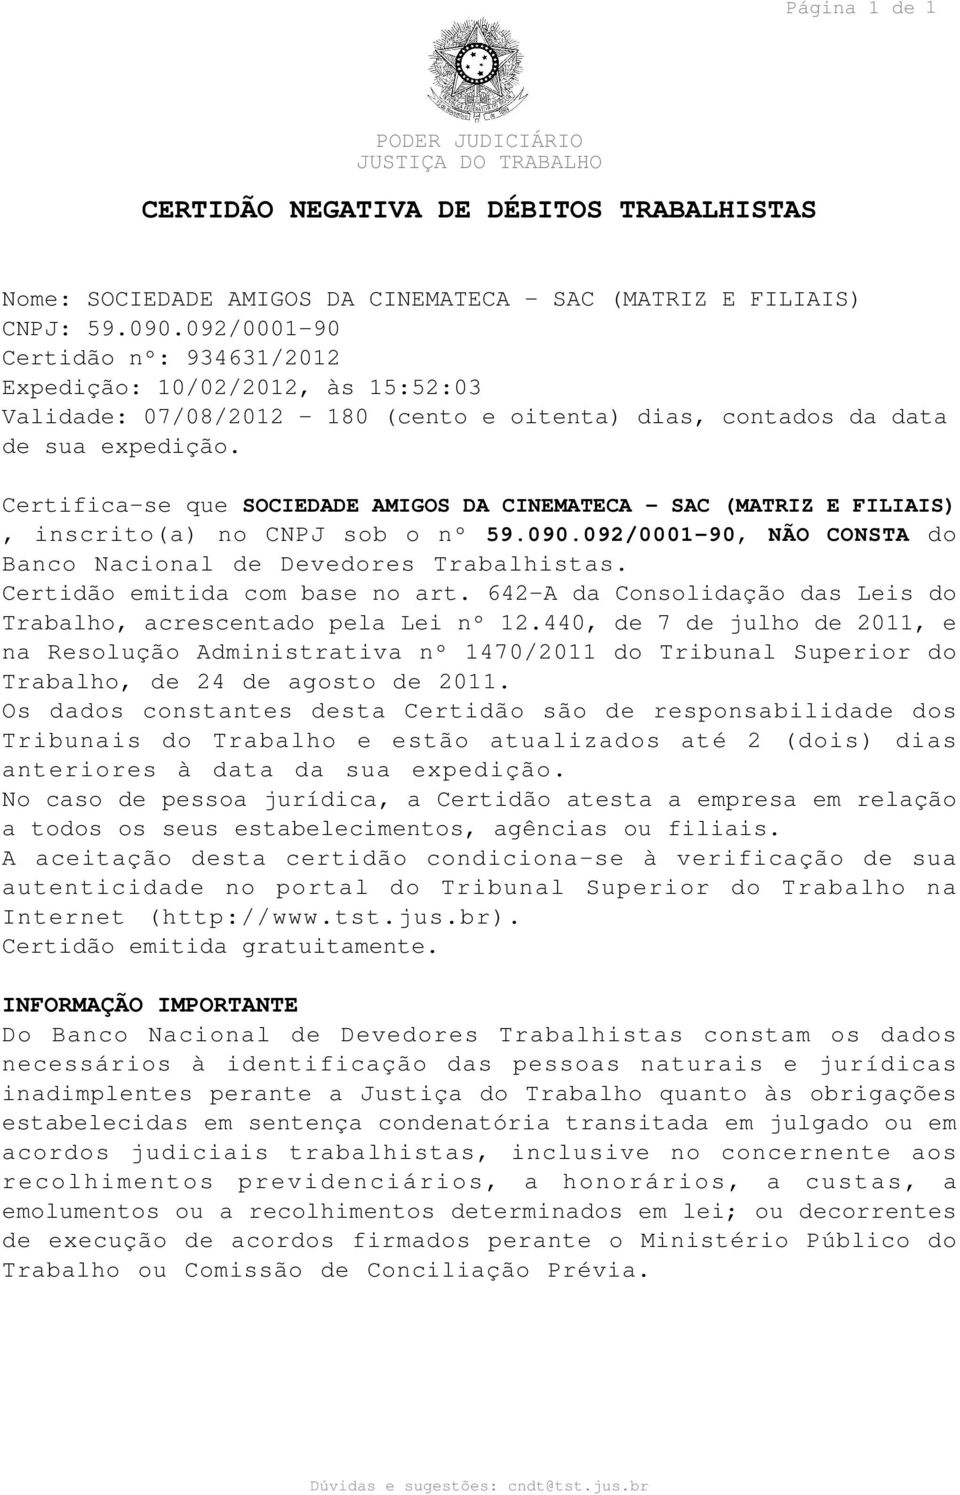 Certifica-se que SOCIEDADE AMIGOS DA CINEMATECA - SAC (MATRIZ E FILIAIS), inscrito(a) no CNPJ sob o nº 59.090.092/0001-90, NÃO CONSTA do Banco Nacional de Devedores Trabalhistas.